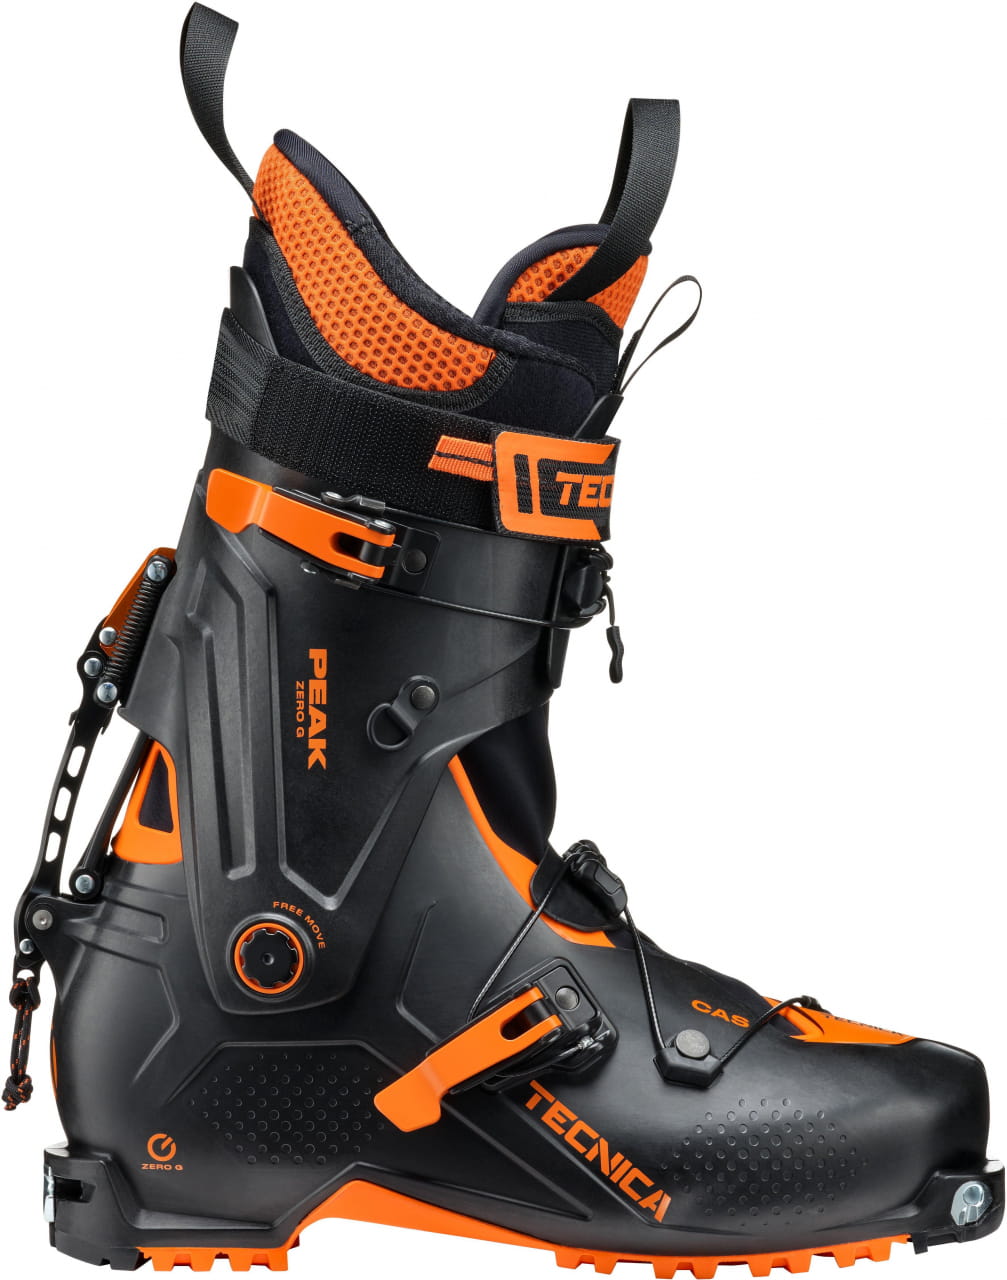 Buty narciarskie do wspinaczki górskiej Tecnica Zero G Peak